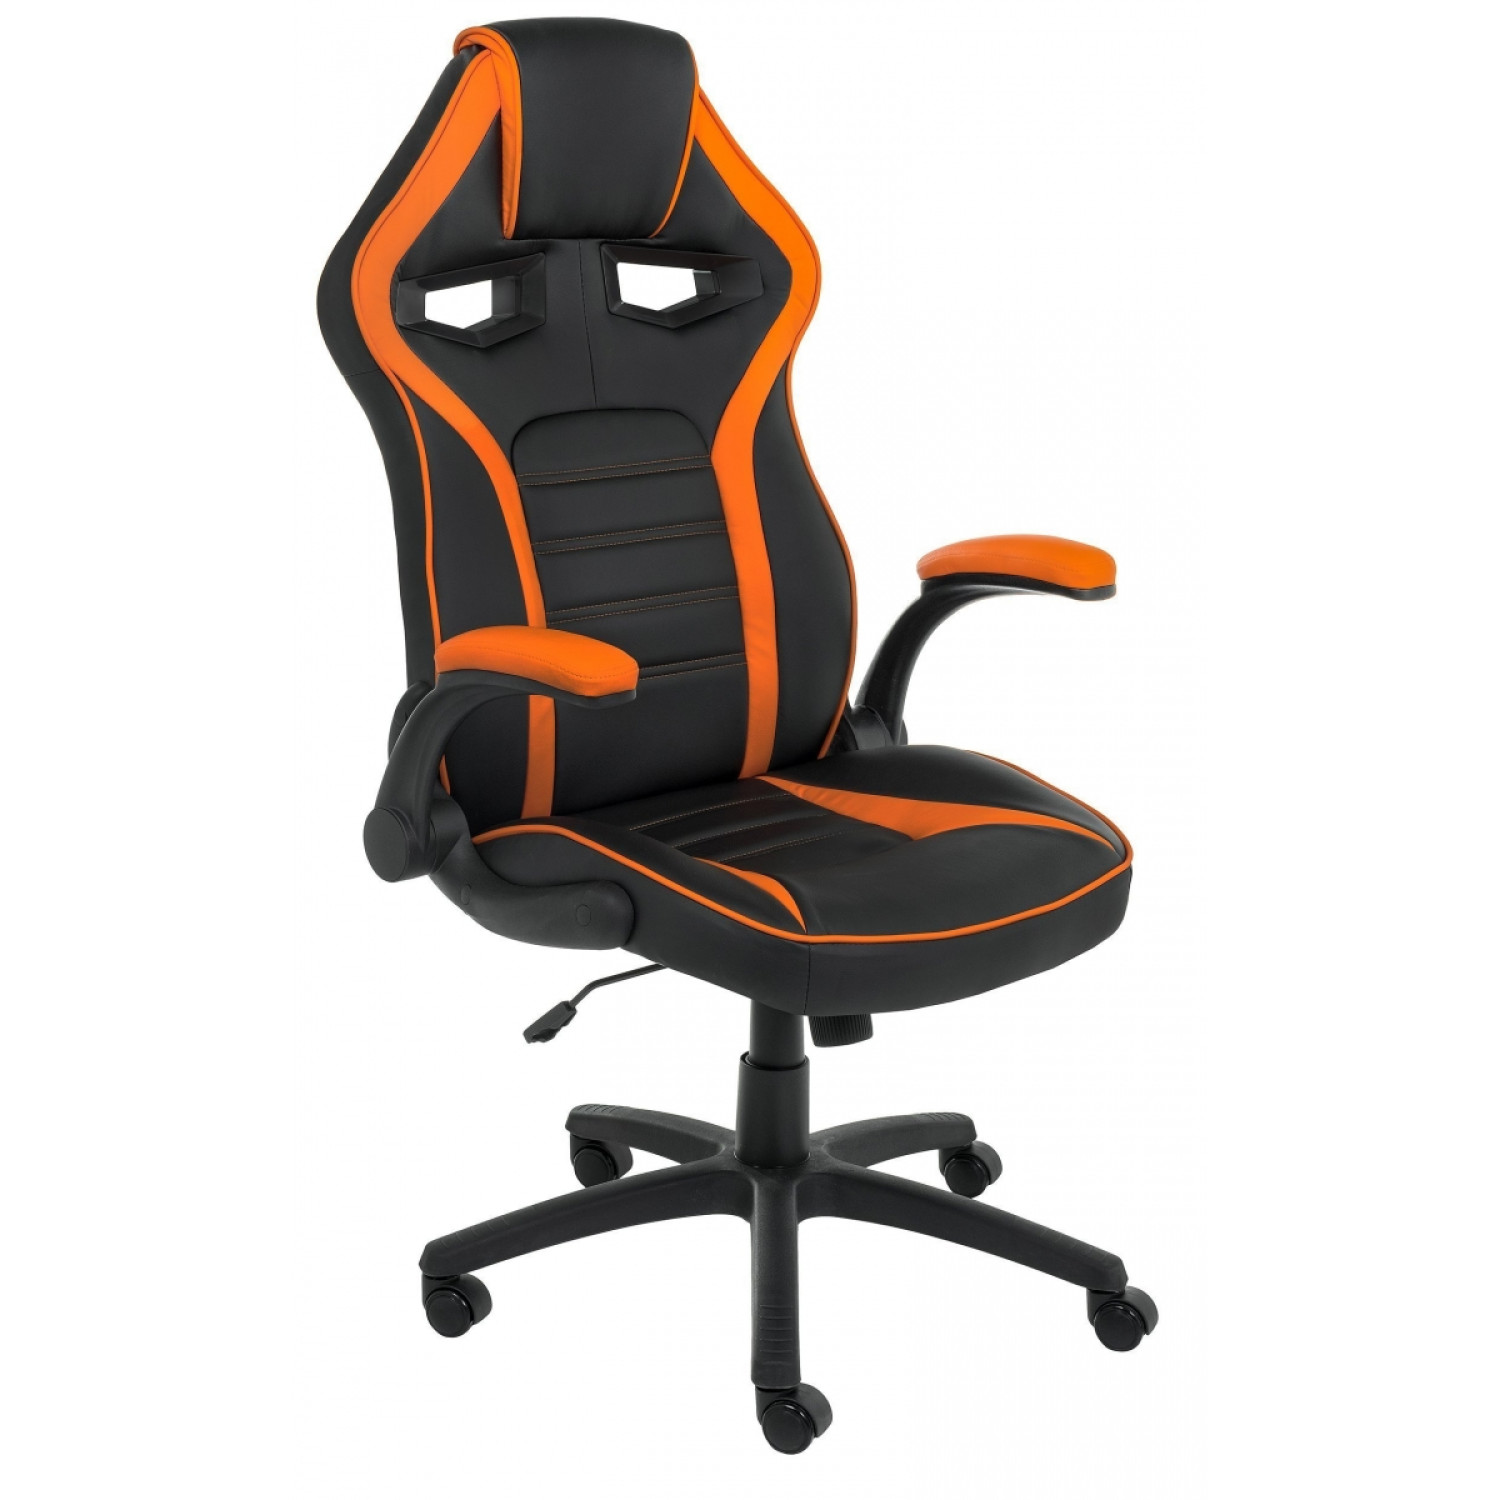 Офисные кресла Monza 1 оранжевое / черное фото 1 — New Style of Furniture